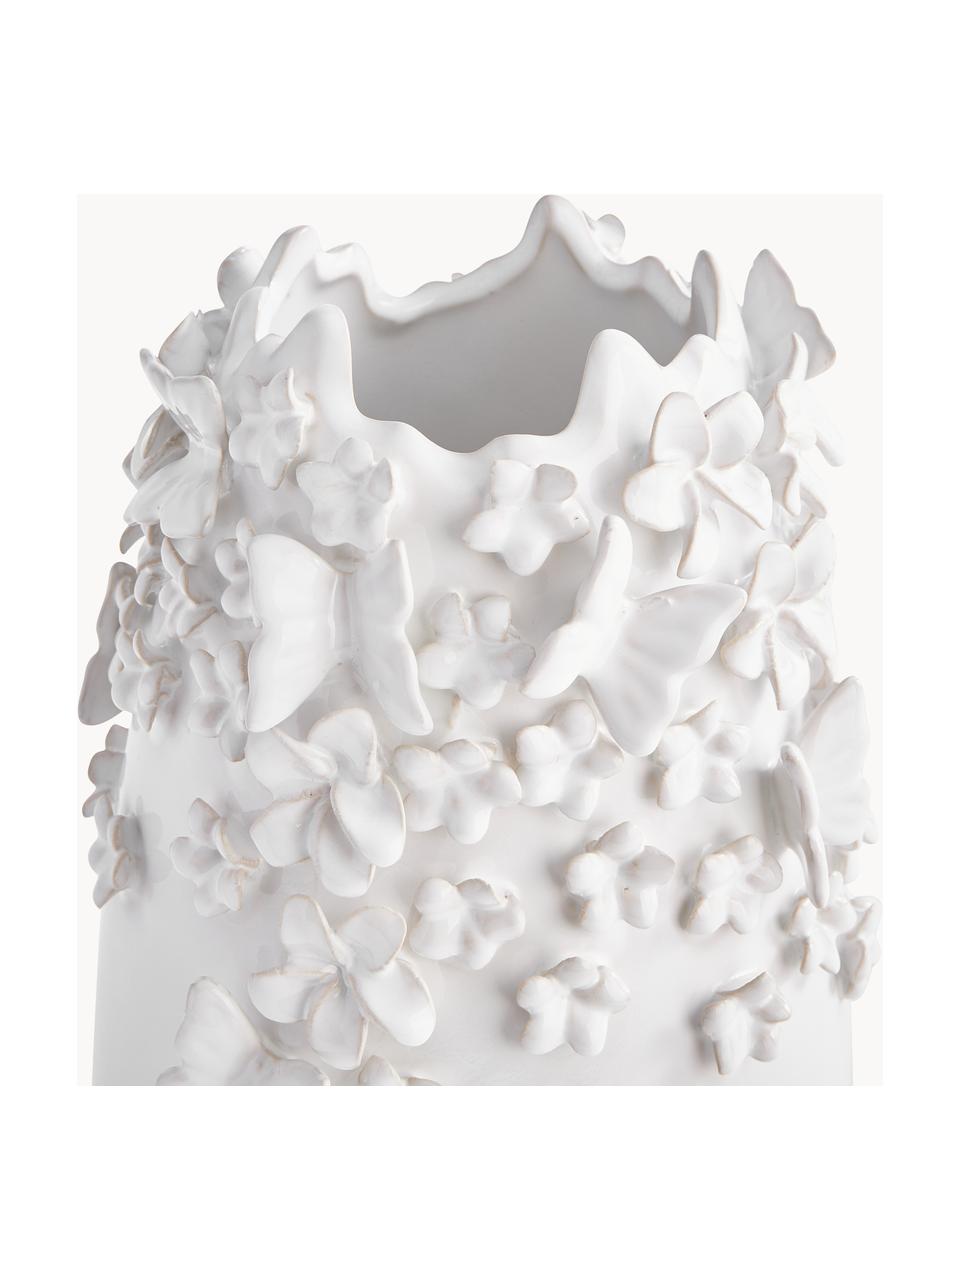 Vase Daphne mit 3D-Verzierung, H 35 cm, Steingut, lackiert, Weiss, Ø 23 cm x H 35 cm